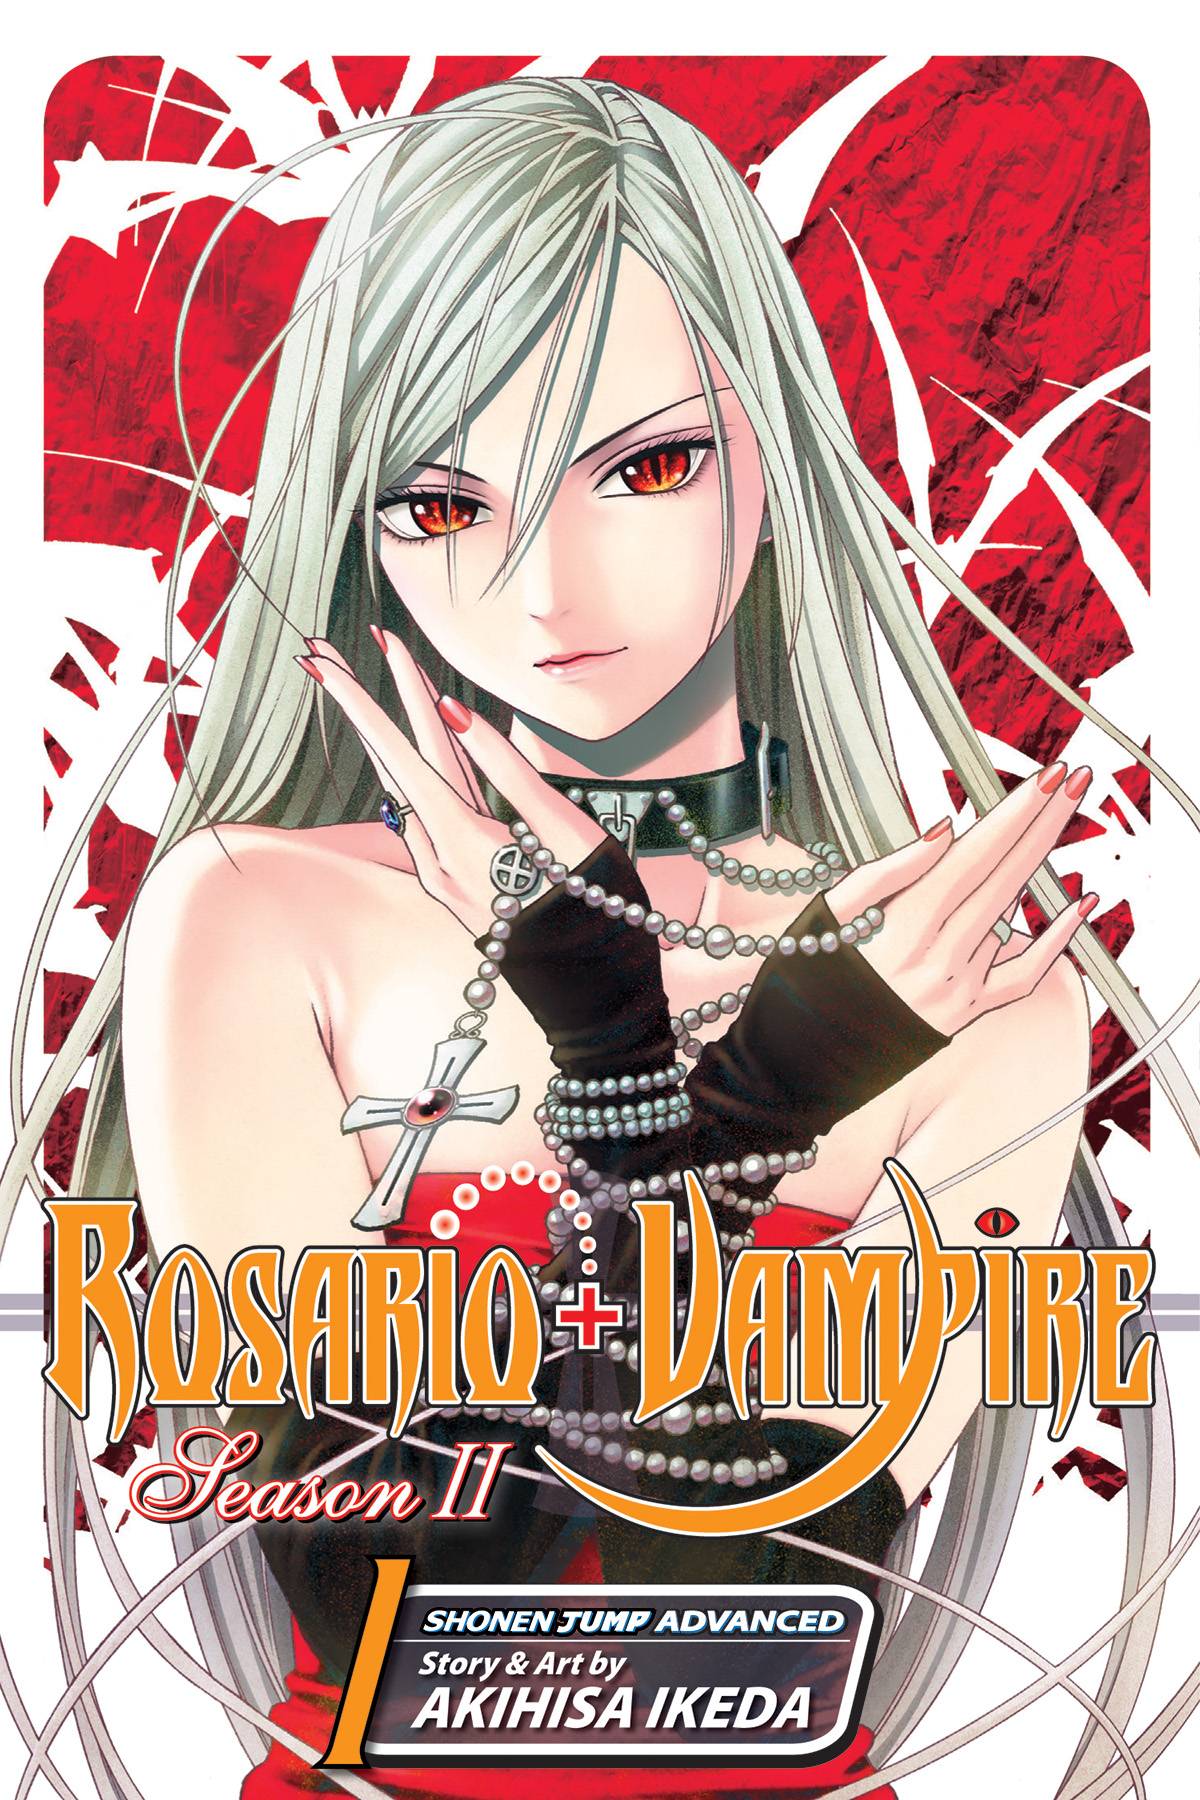 Rosario Vampire Season II Manga Volume 1